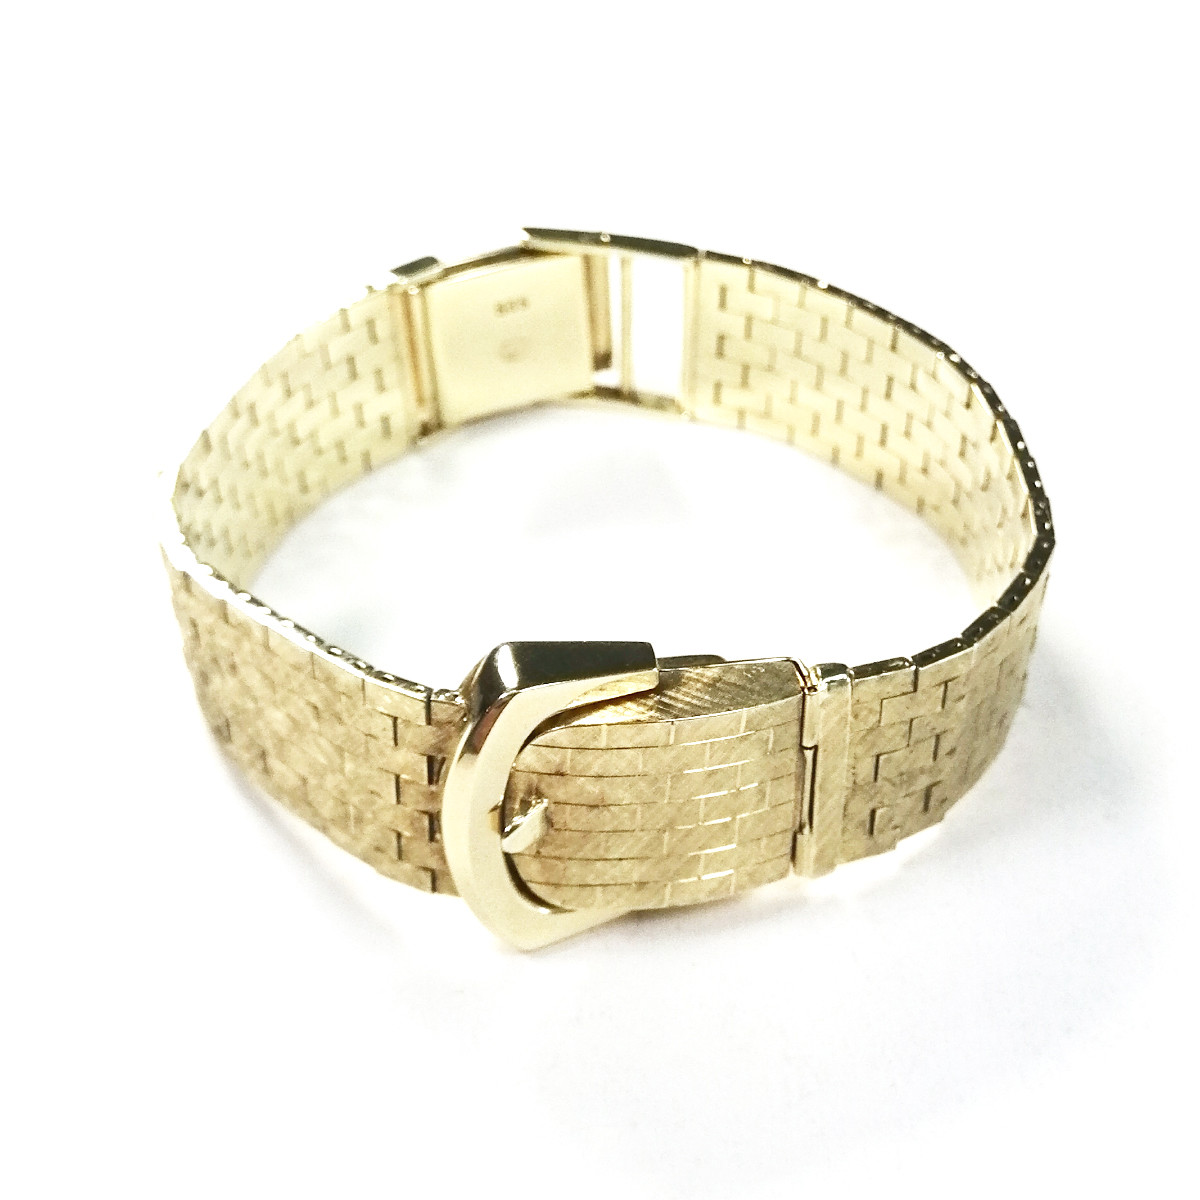 Montre d'occasion bracelet Piaget or 585 jaune 17 cm - vue 3